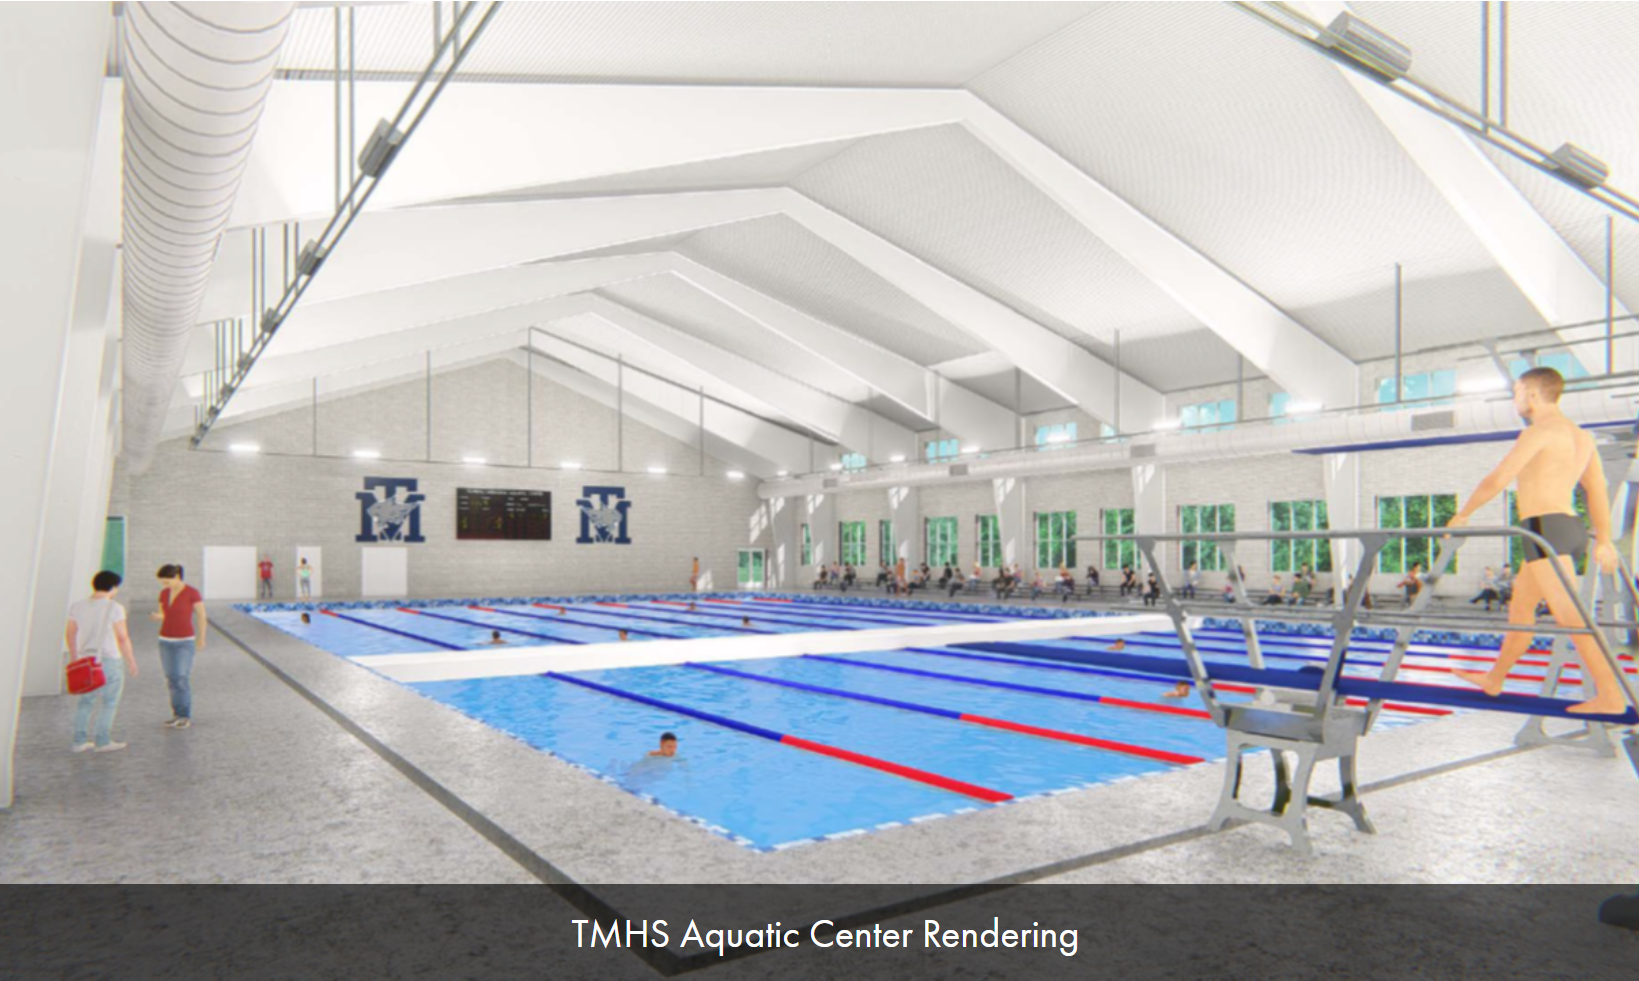 TMHS Aquatic Center Rendering